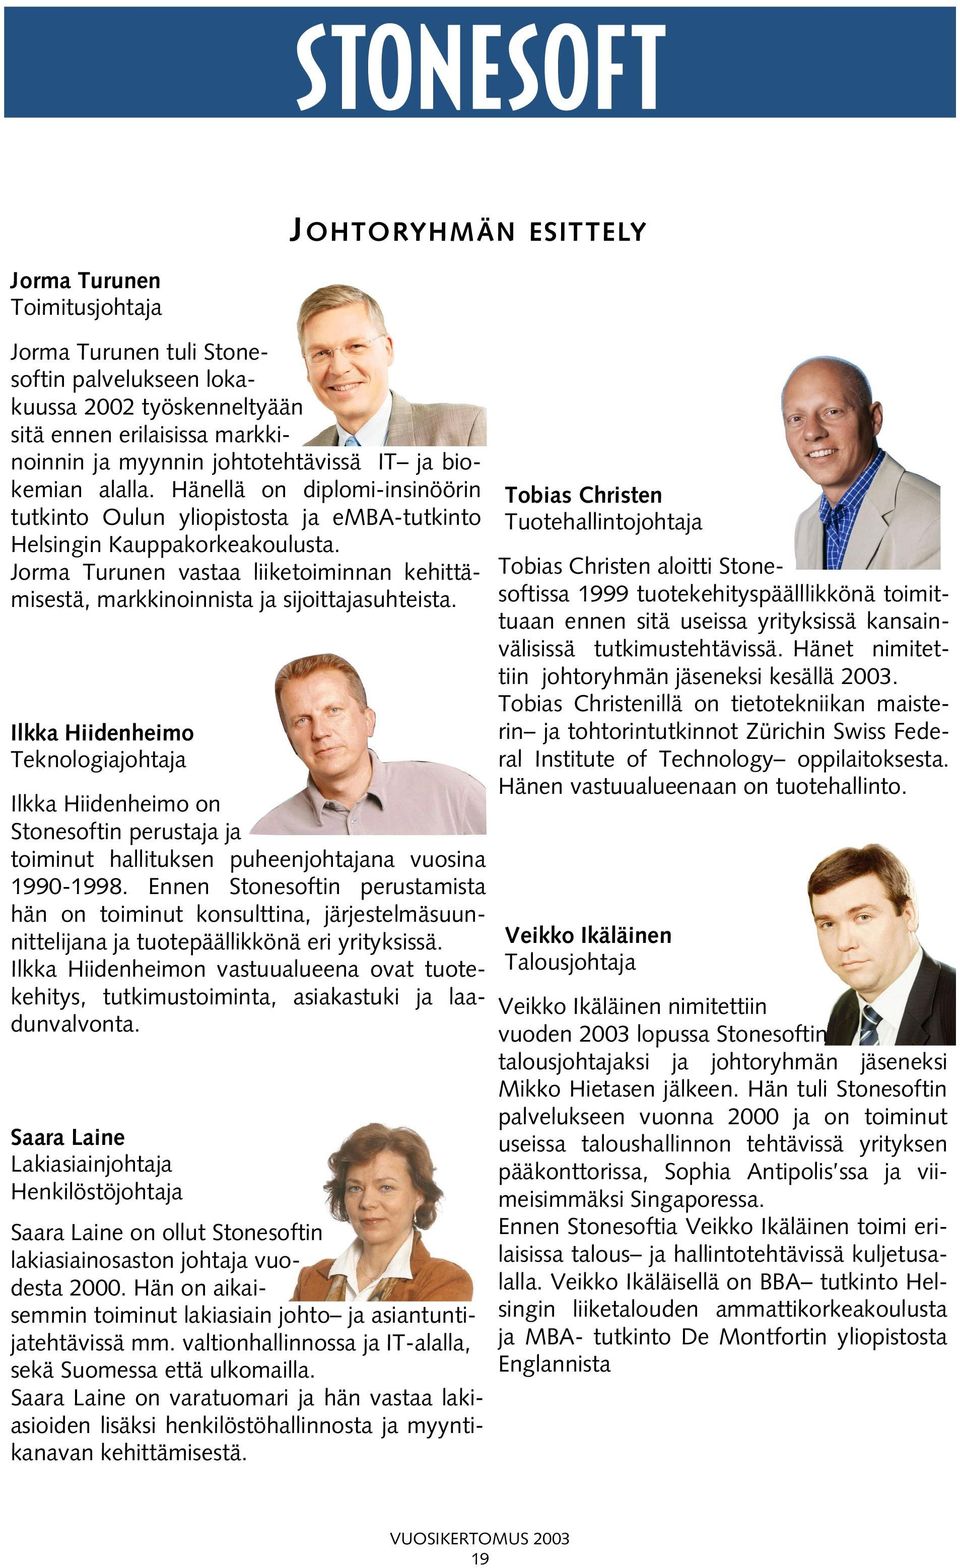 Jorma Turunen vastaa liiketoiminnan kehittämisestä, markkinoinnista ja sijoittajasuhteista.